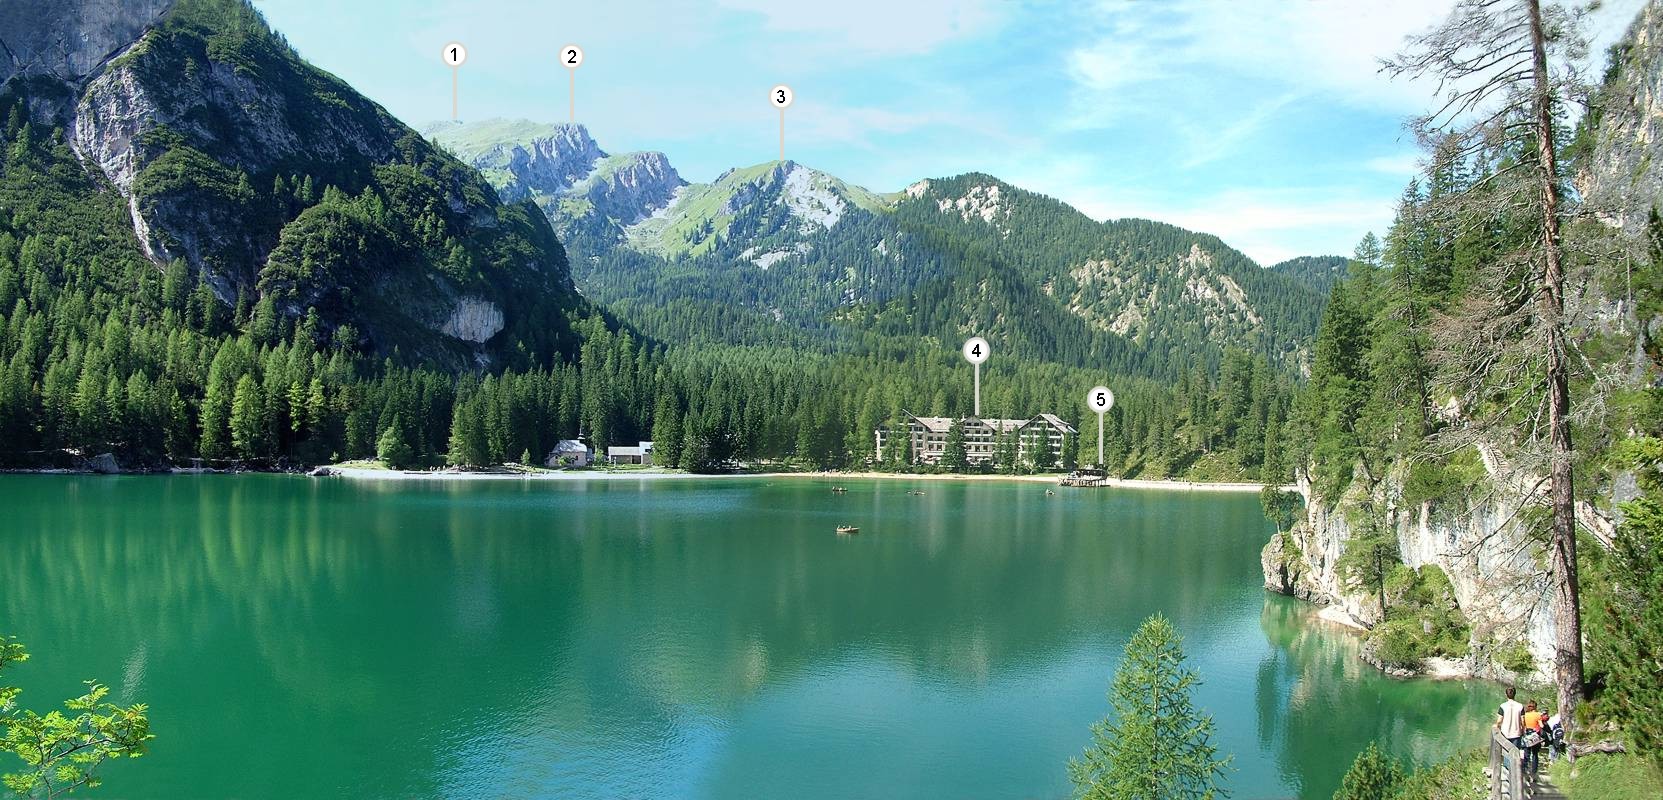 Der Blick über den See in Richtung Nordwest ist einfach grandios. Folgendes ist zu sehen: (1) Rochalpenkopf [Coi Alc, 2542m], (2) Kaserkopf [2414m], (3) Kuhwiesenkopf [2140m] sowie das (4) Hotel Pragser Wildsee [Hot. Lago di Braies] und der (5) Bootsverleih.